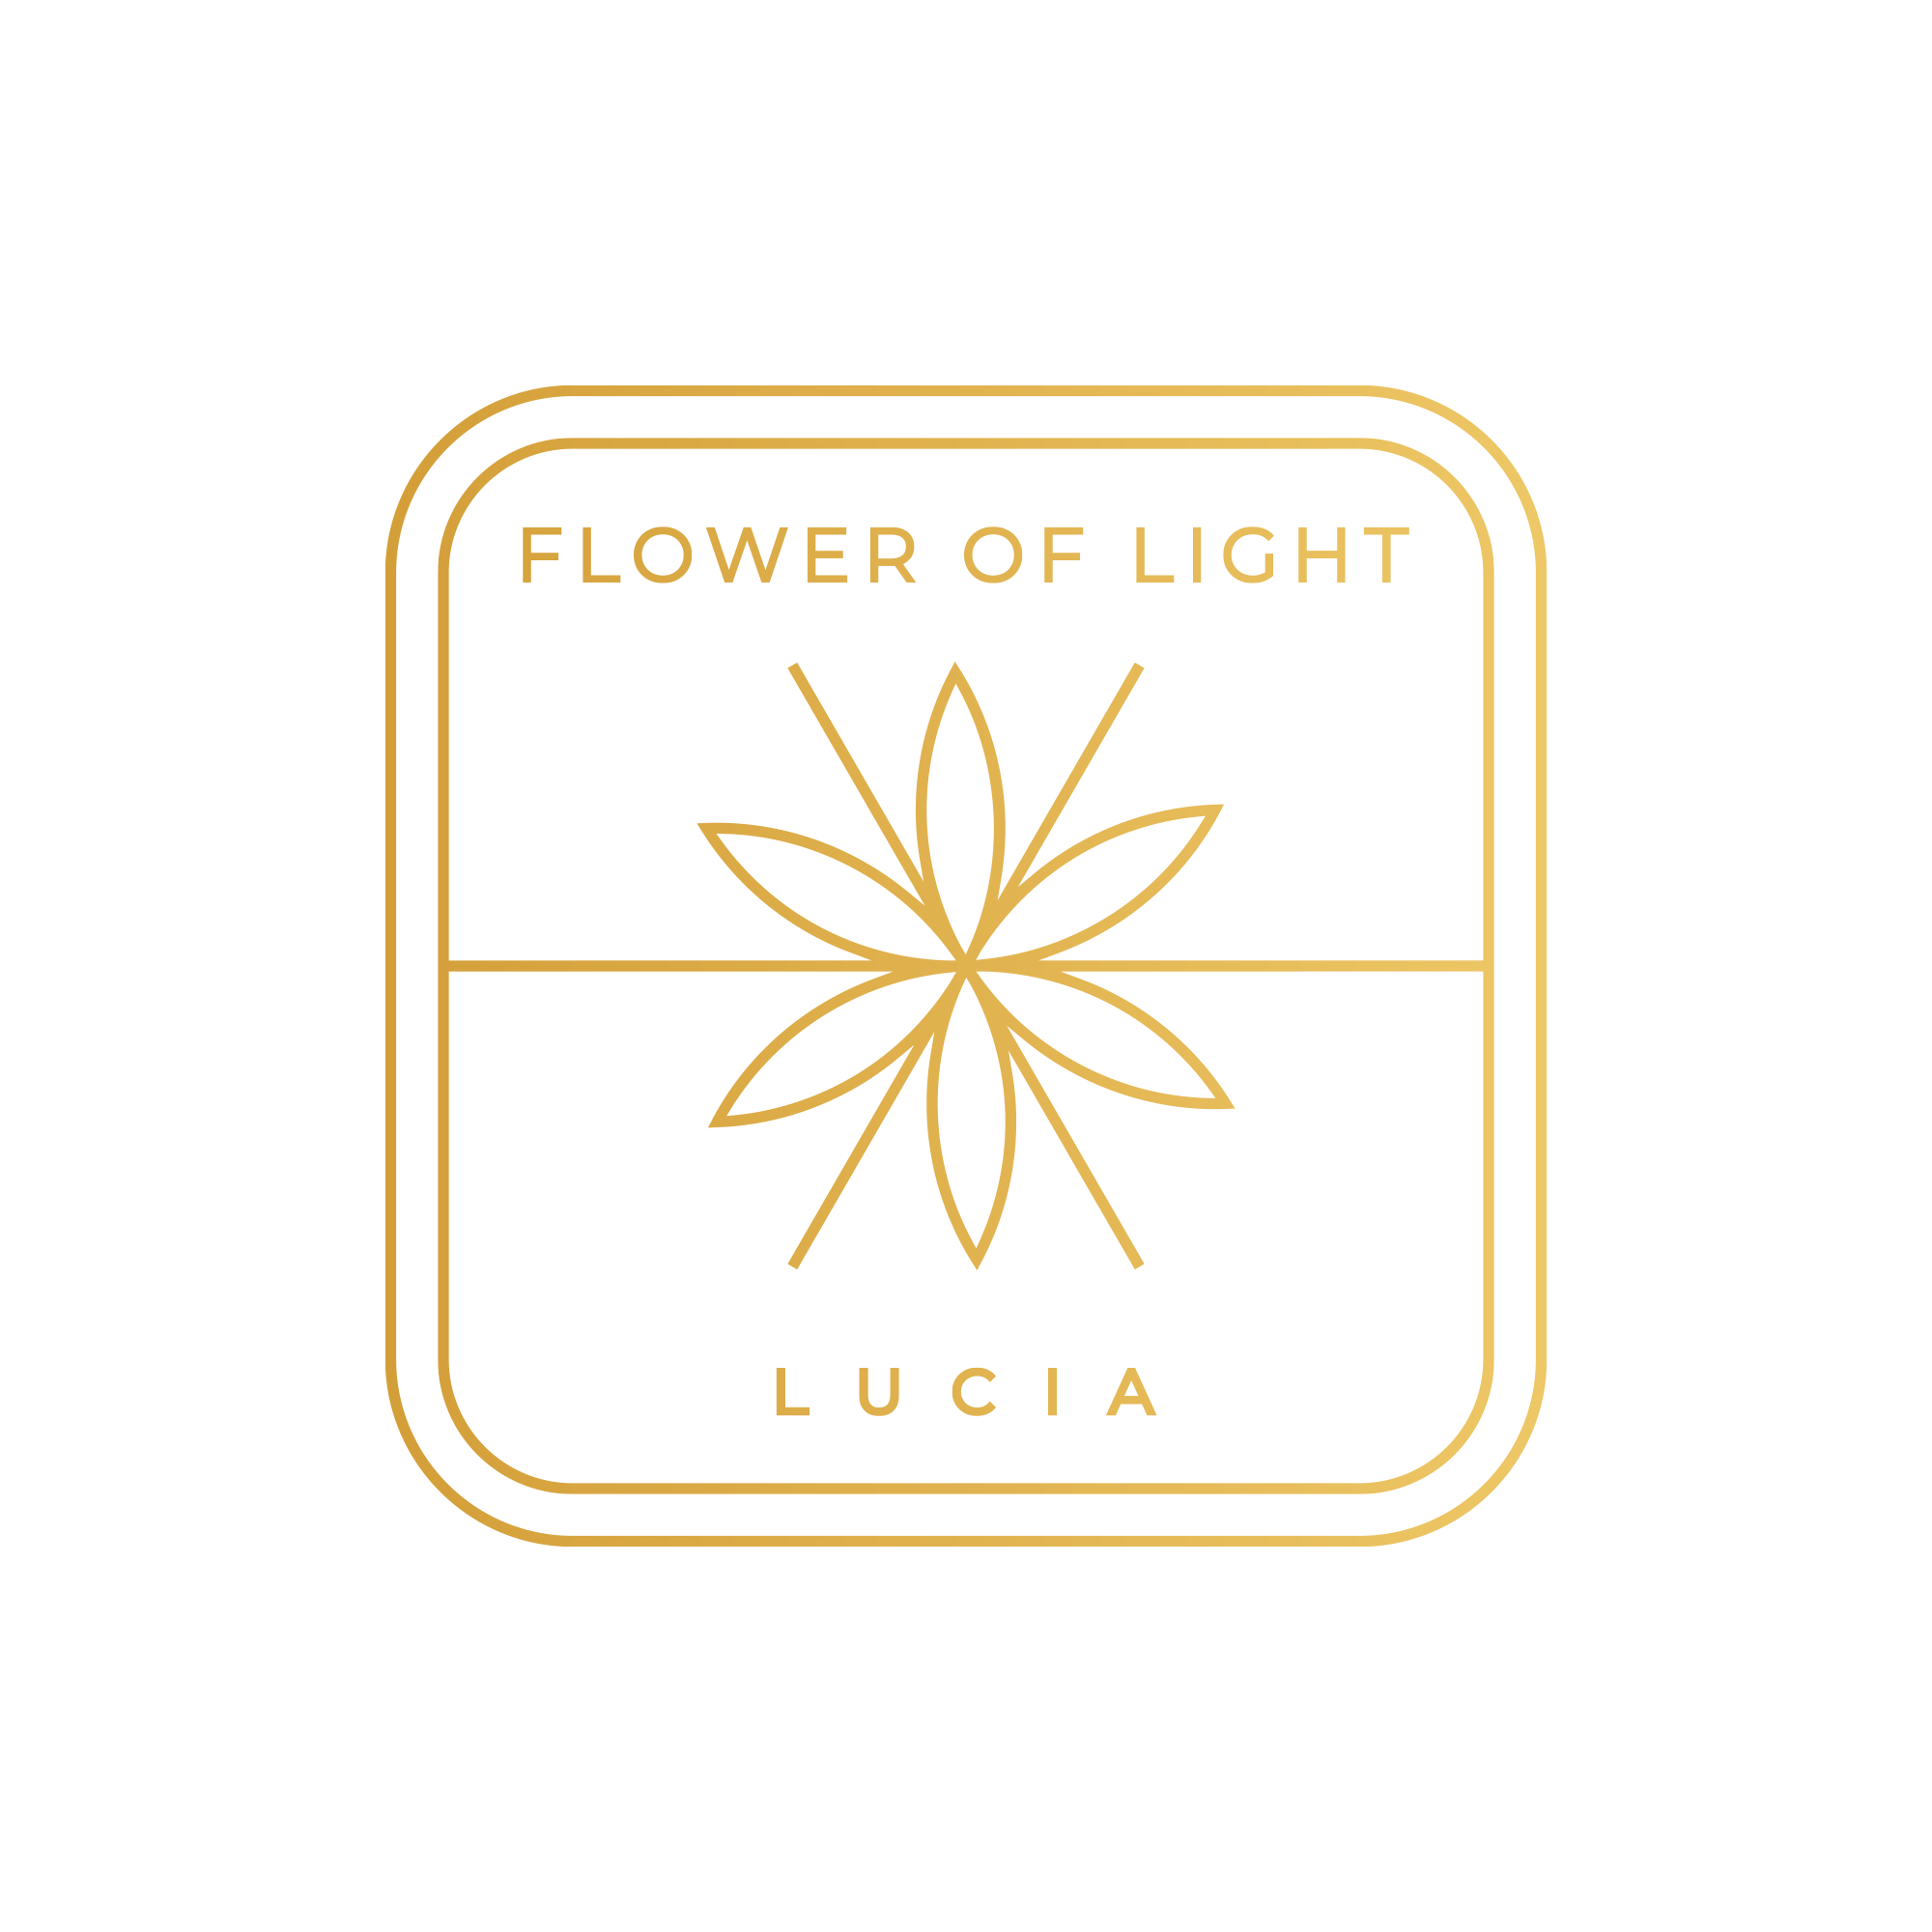 Flower of Light Lucia